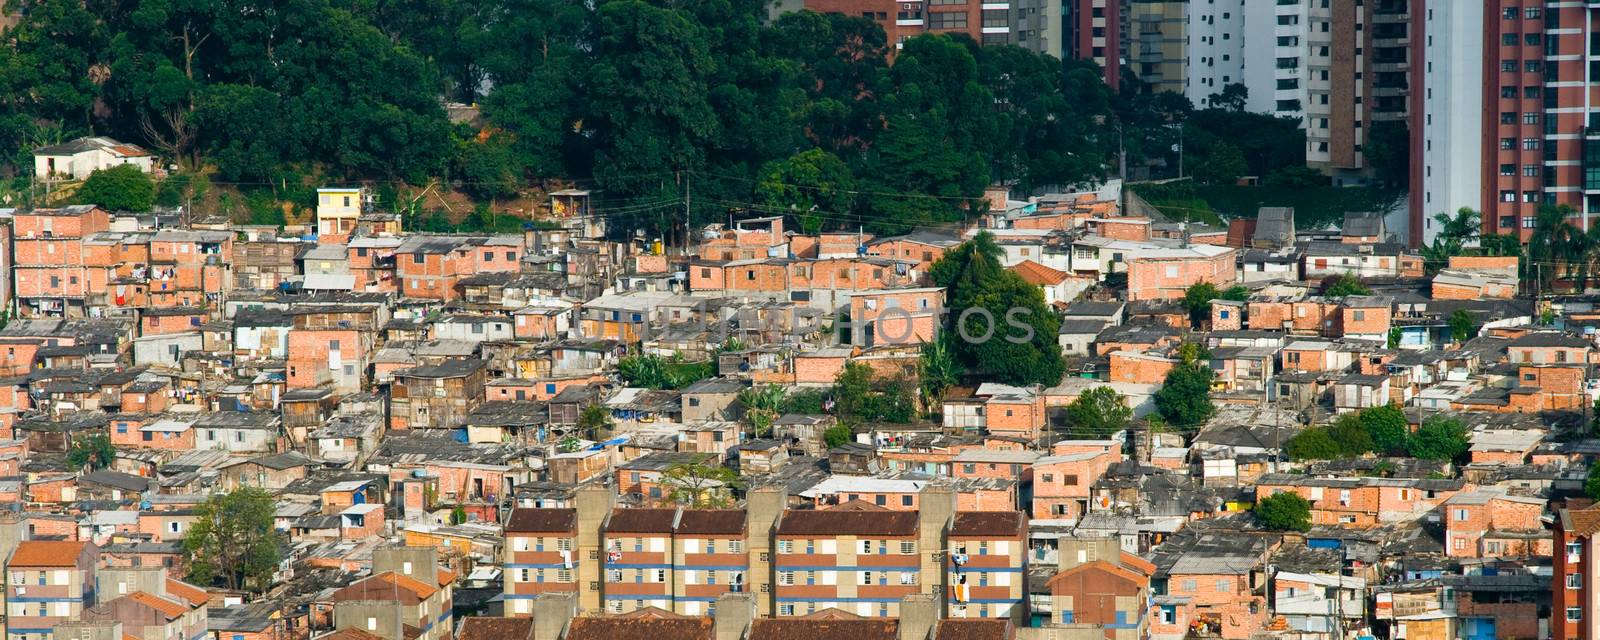 Favela by CelsoDiniz